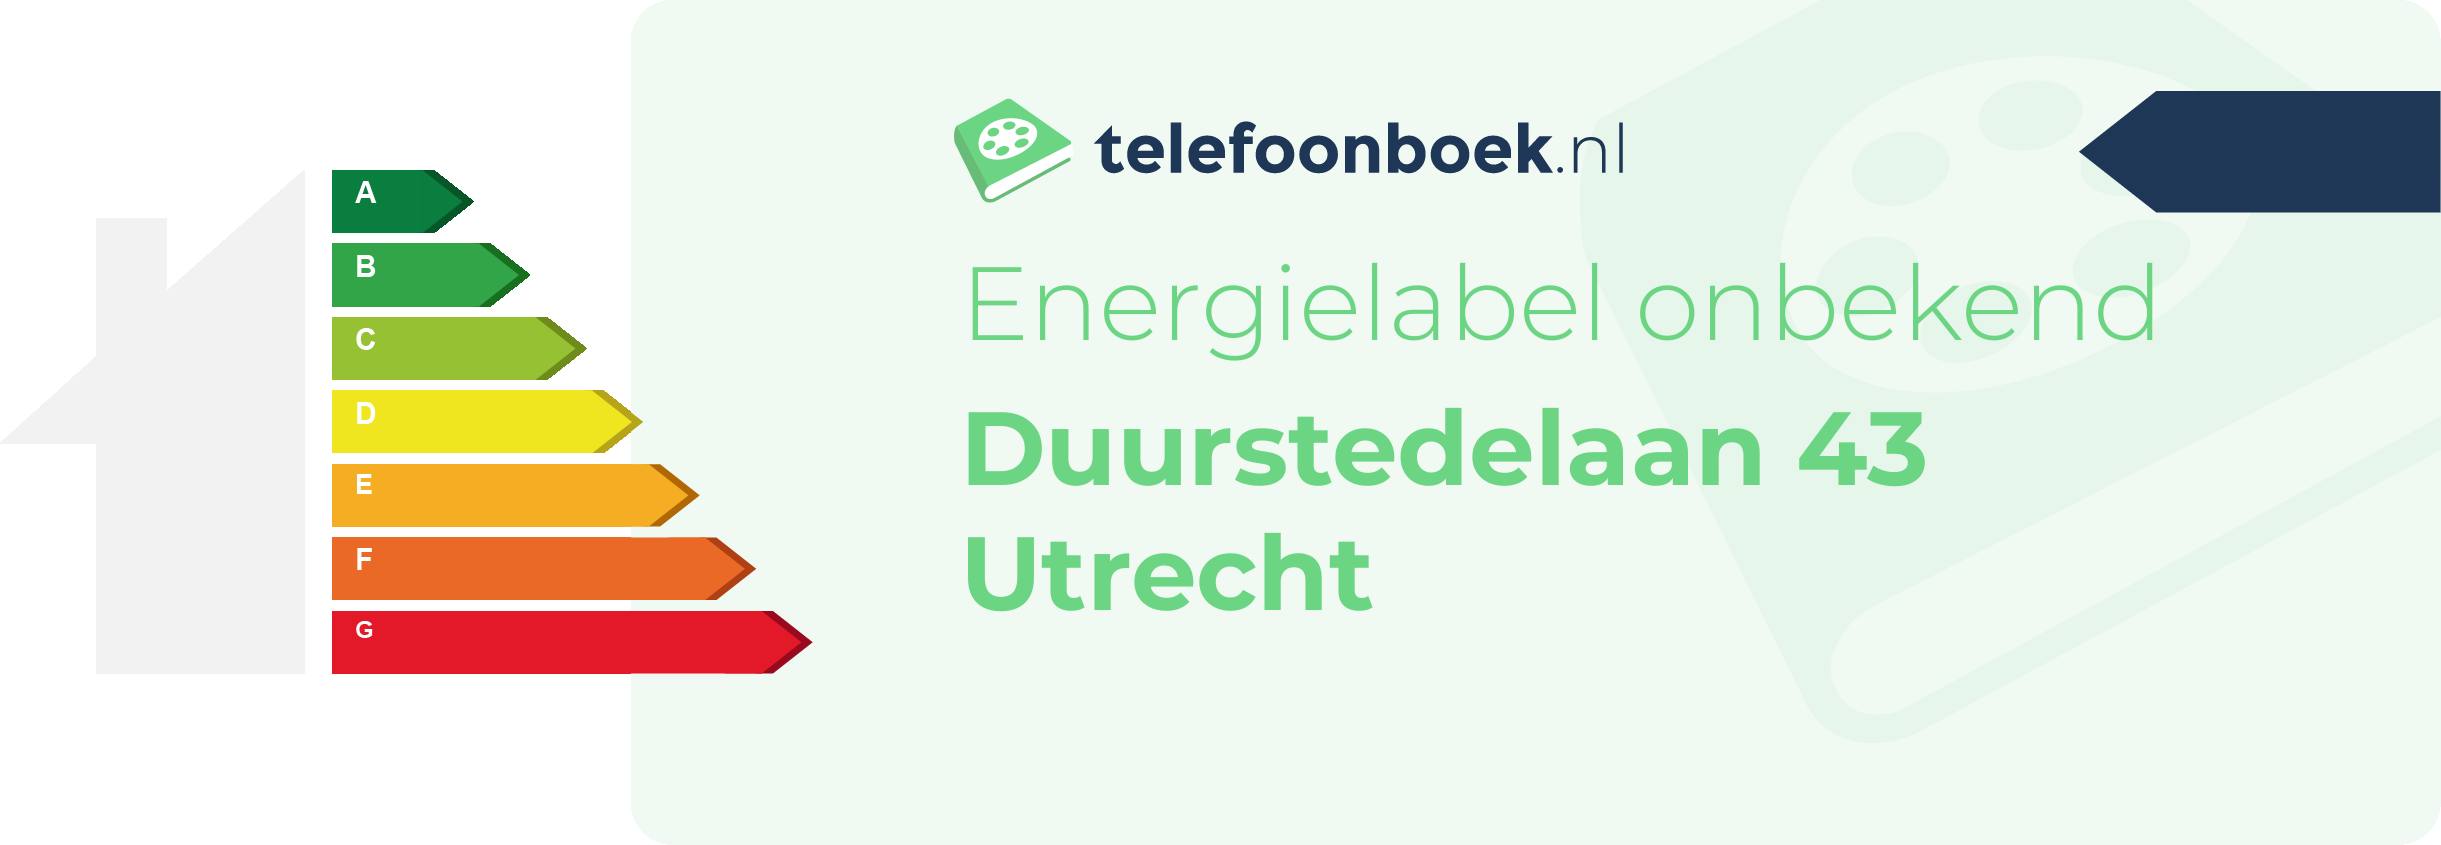 Energielabel Duurstedelaan 43 Utrecht